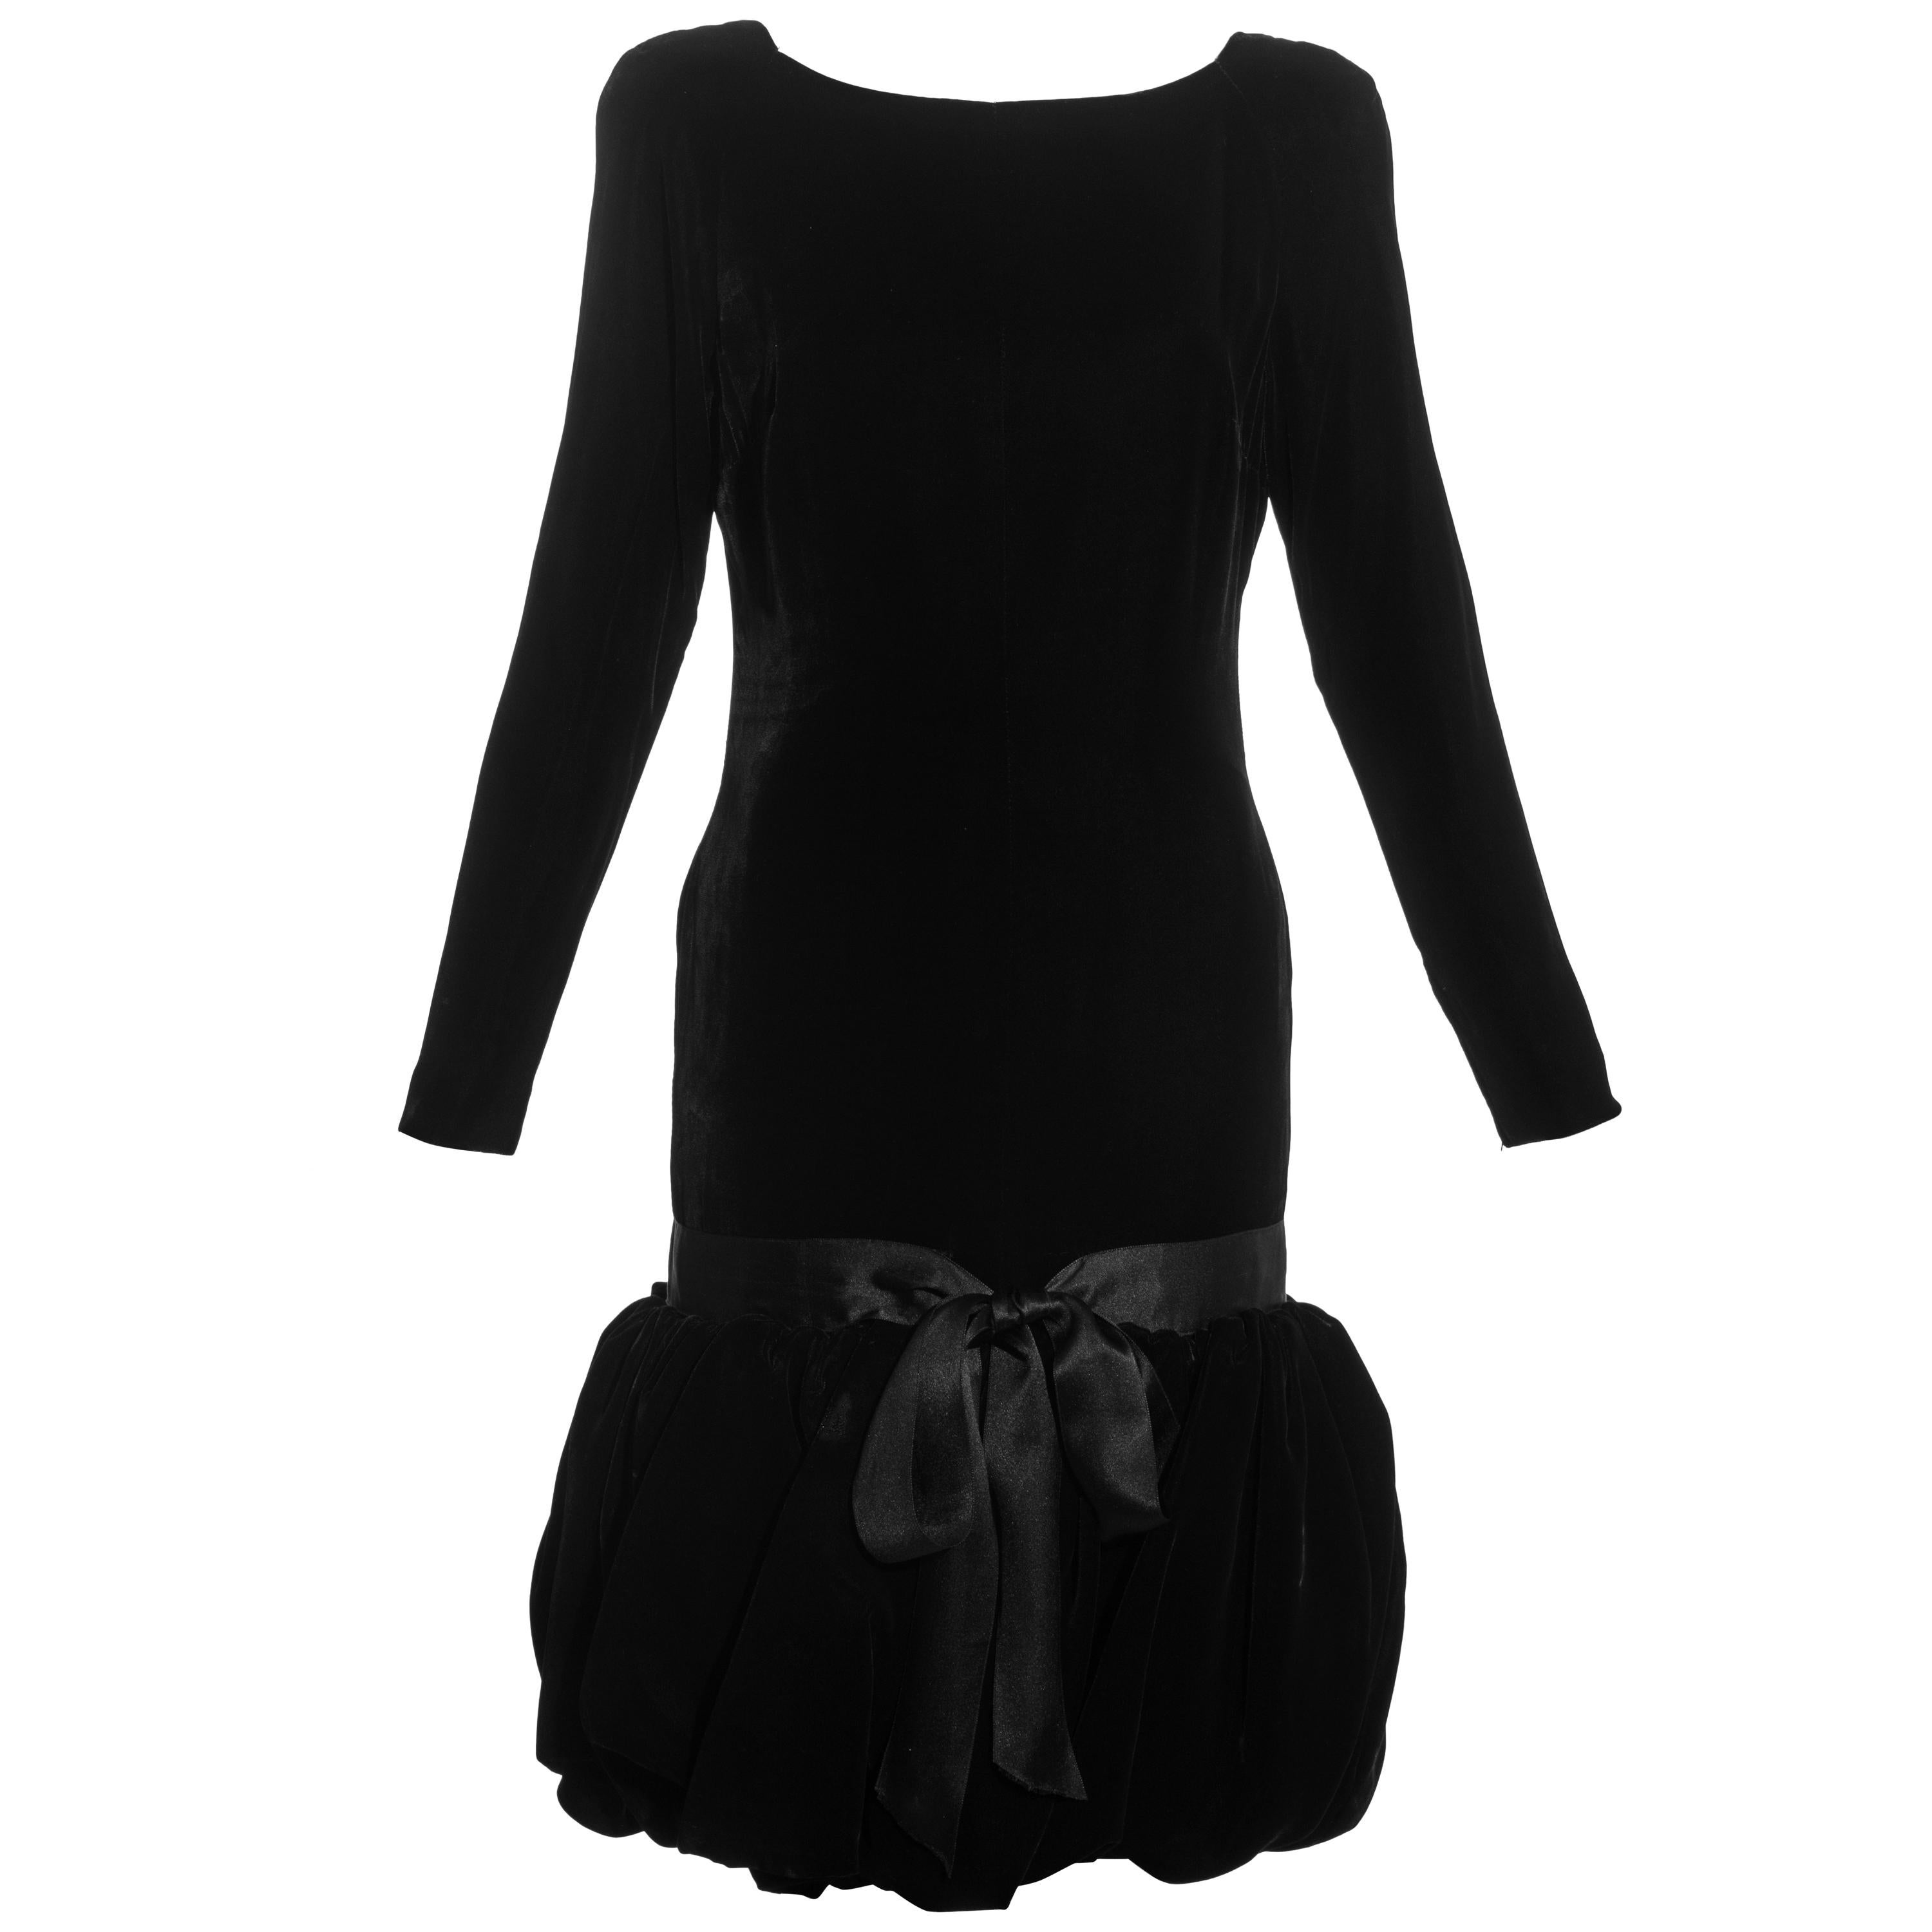 Black silk velvet drop waist cocktail dress with puffball skirt, c. 1960